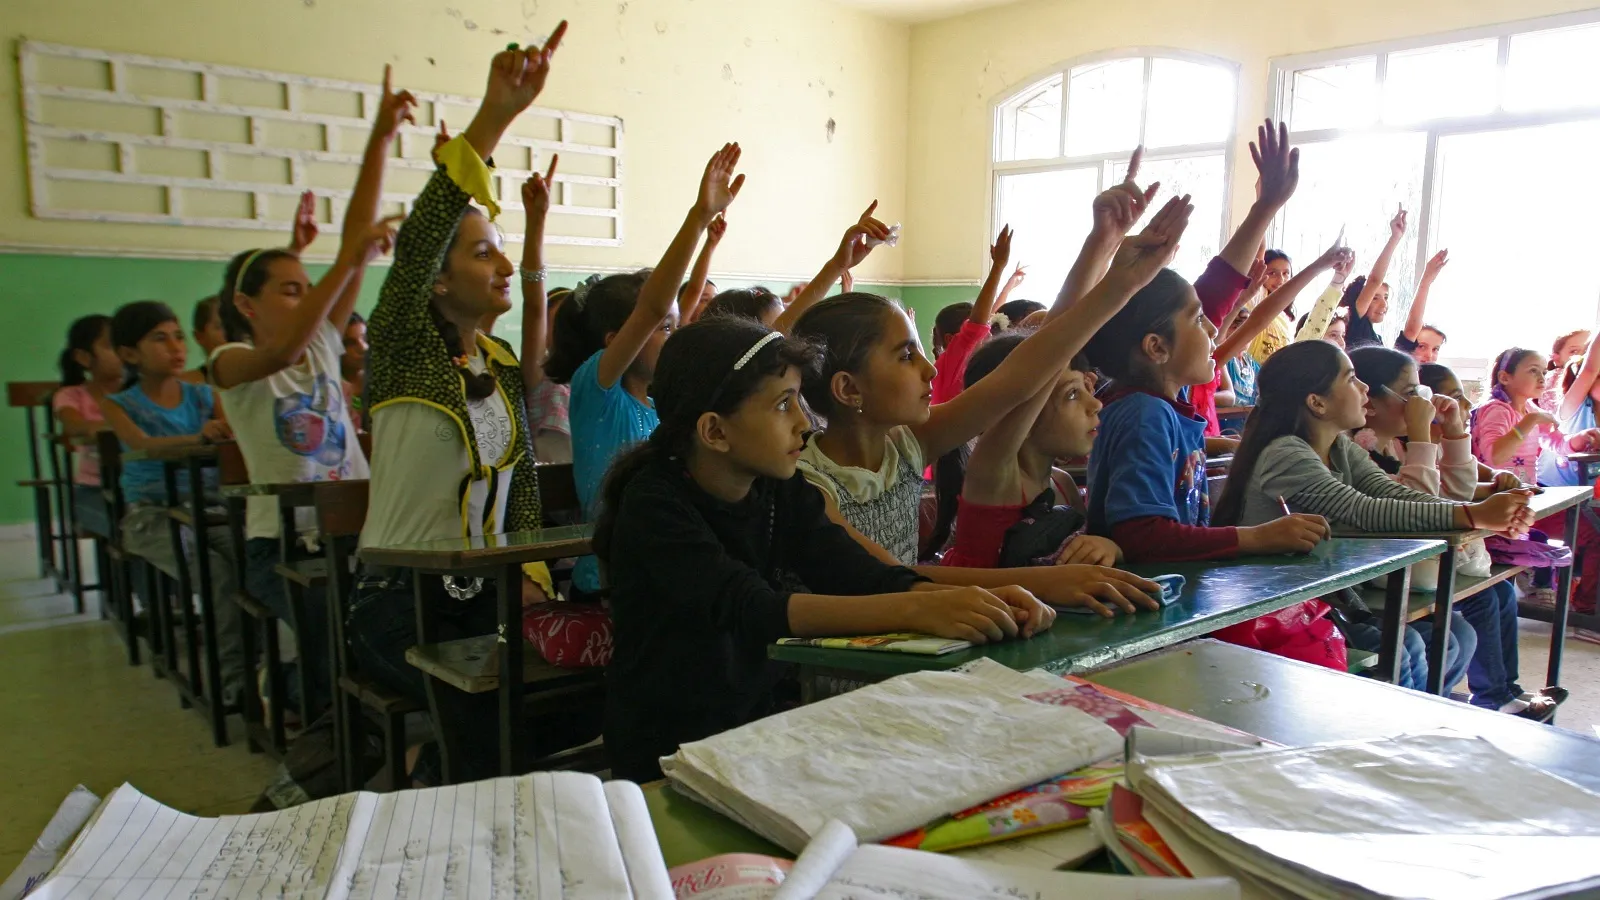 "التربية اللبنانية" ترفض تسجيل السوريين في المدارس الخاصة